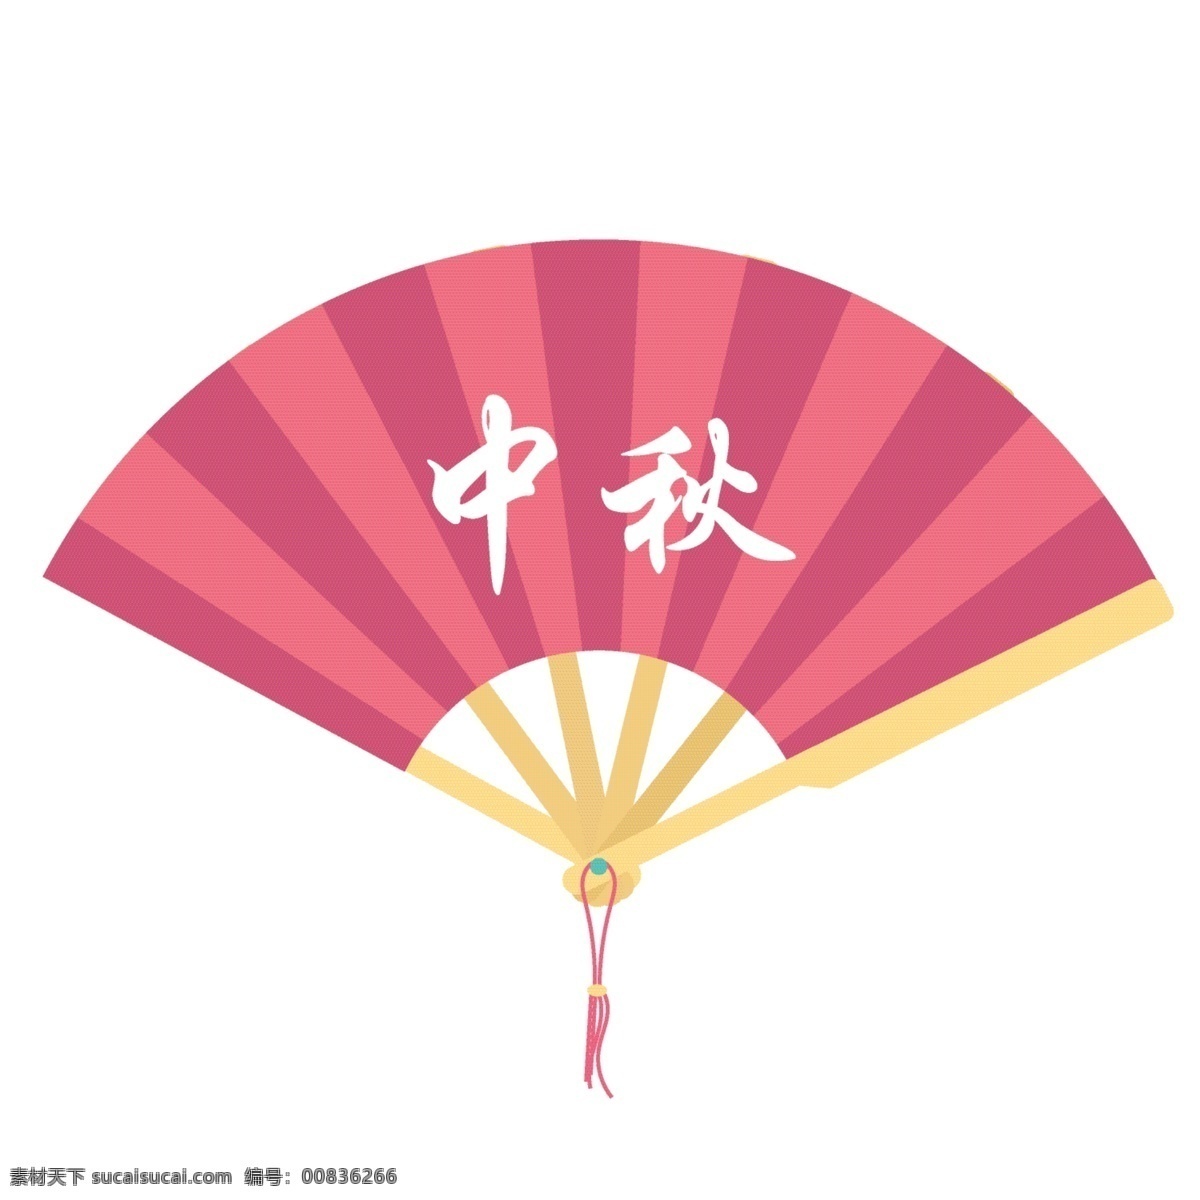 矢量图 手绘 中秋节 扇子 中国风 红色 复古 节日 中秋 春节 喜庆